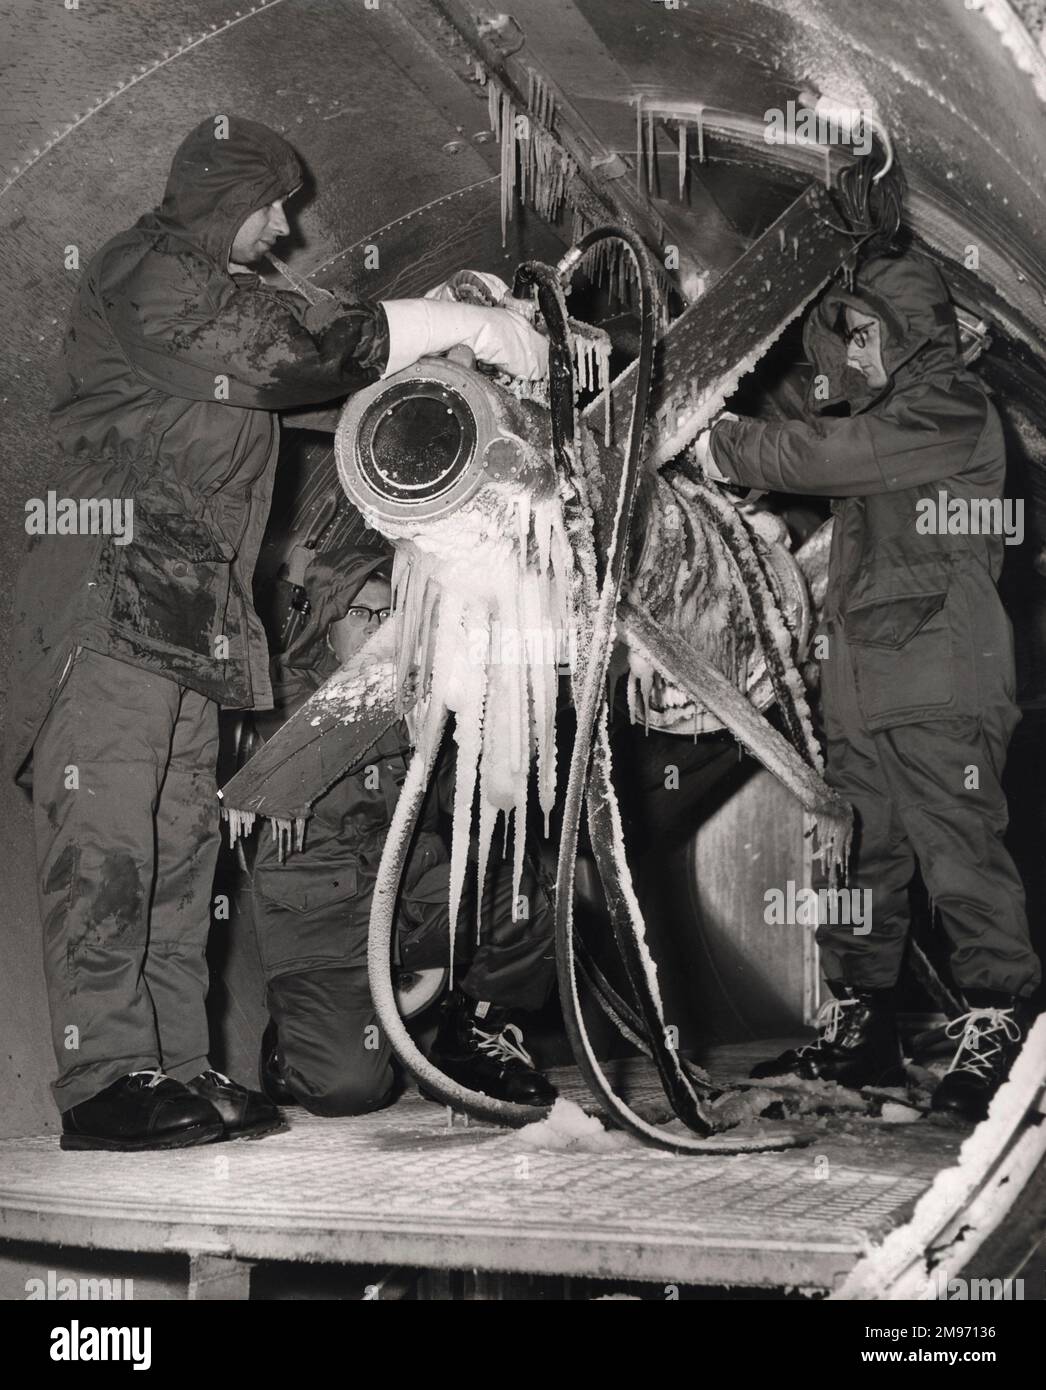 Ein Techniker inspiziert eine Schiff-Luft-Rakete von Armstrong Whitworth Seaslug, nachdem sie in der Klimakammer des Unternehmens bei arktischen Temperaturen getestet wurde. November 1959. Stockfoto